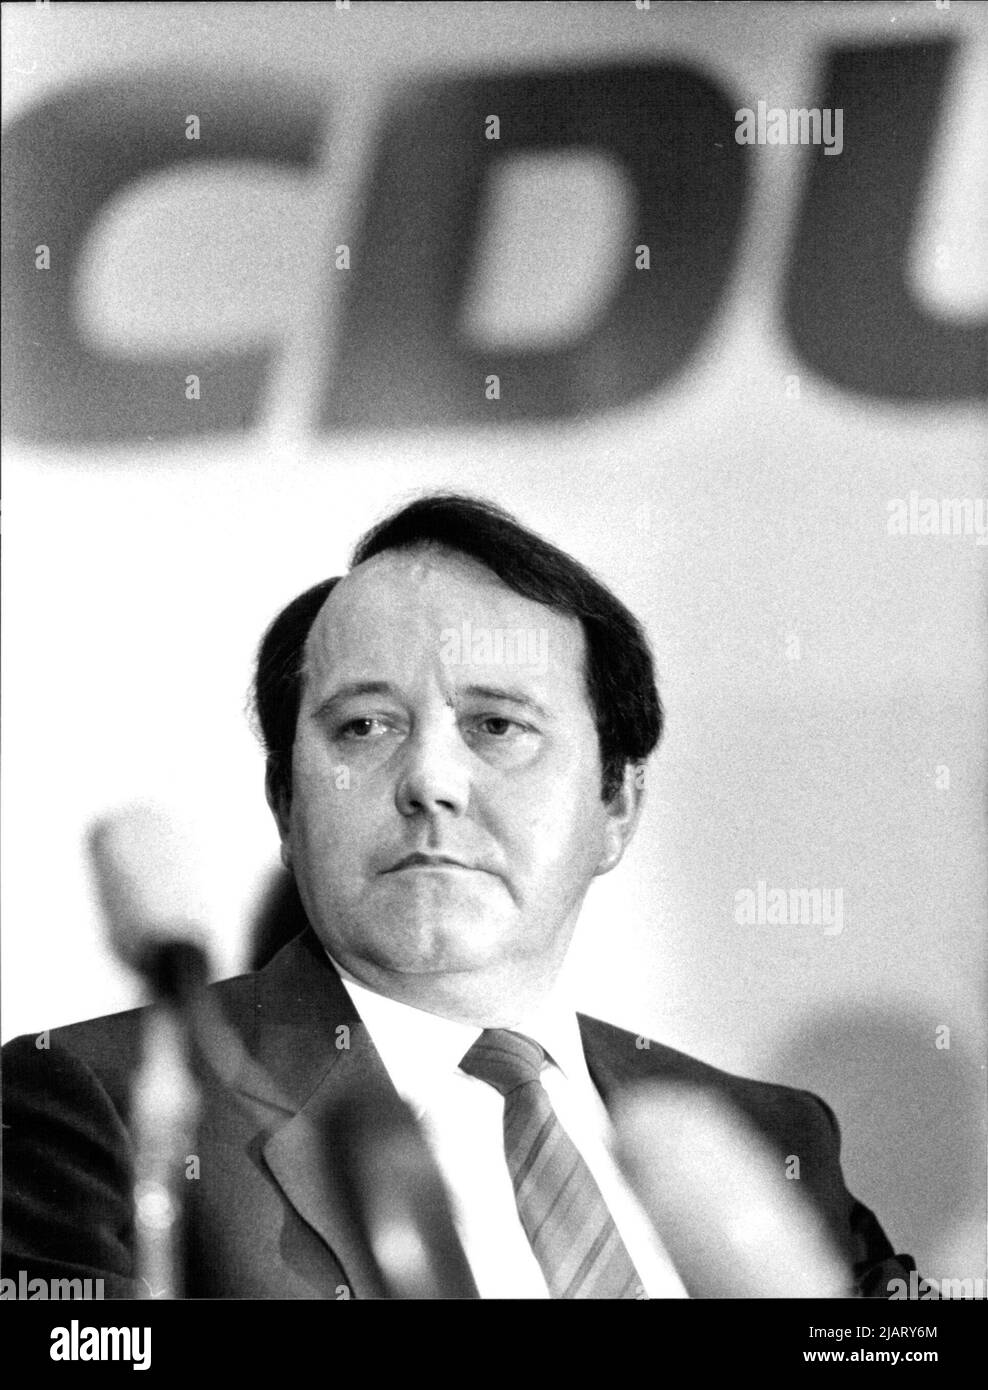 Wahl des CDU-Spitzenkandidaten für die Landtagswahlen 1984 in Nordrhein-Westfalen. Mit 162 Stimmen wurde Bernhard Worms zum Spitzenkandidaten gewählt. Stock Photo